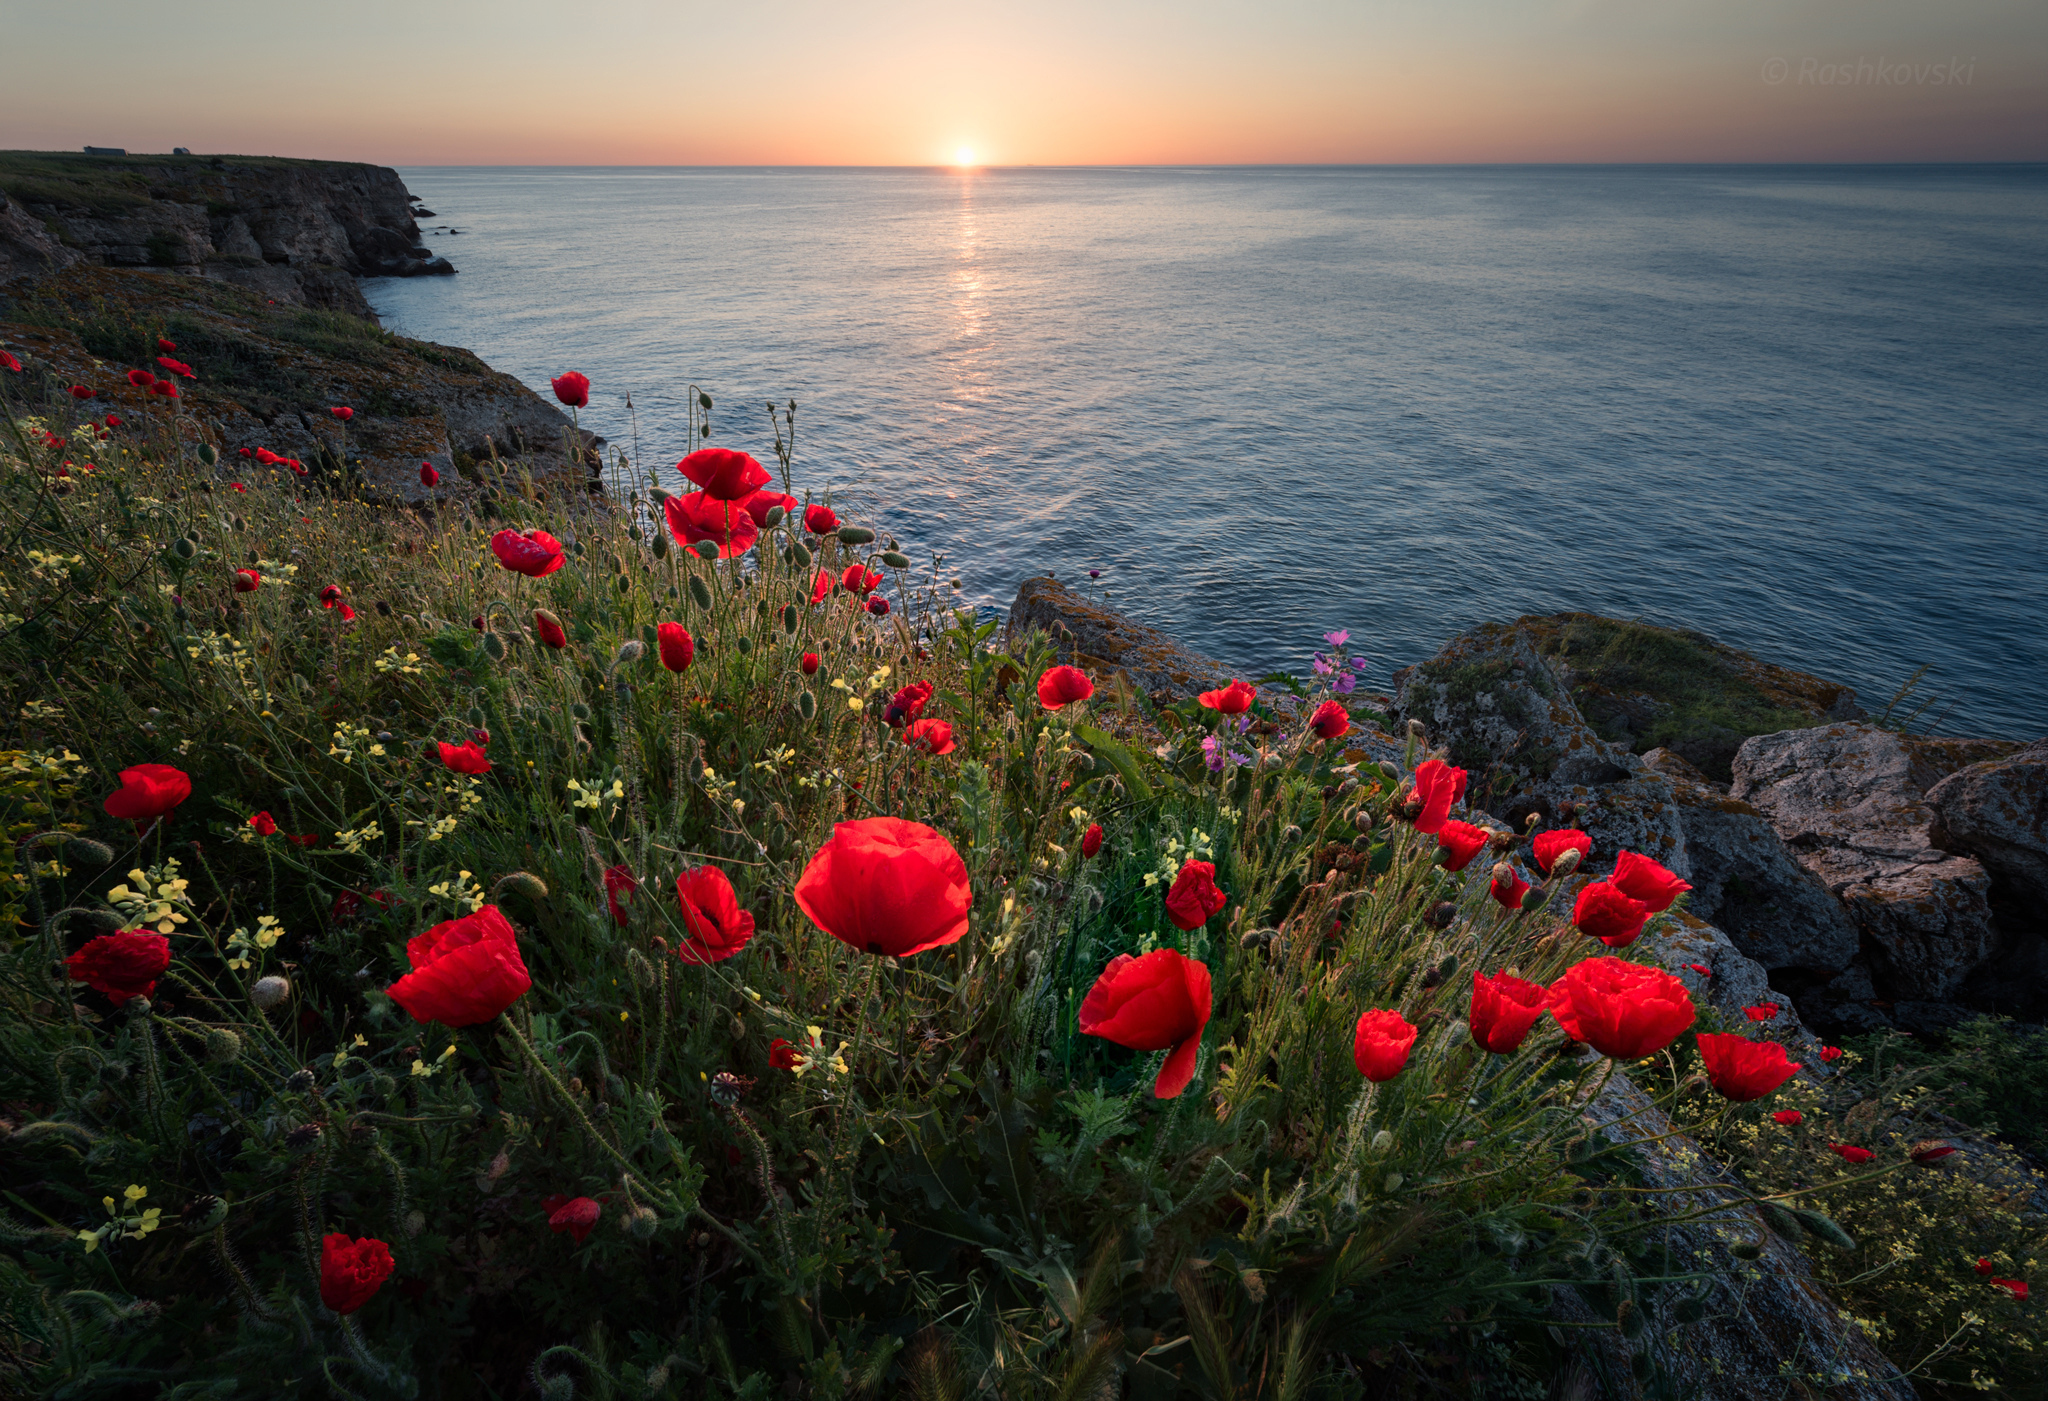 Download mobile wallpaper Sunset, Sea, Horizon, Flower, Ocean, Earth, Poppy, Coastline, Red Flower for free.